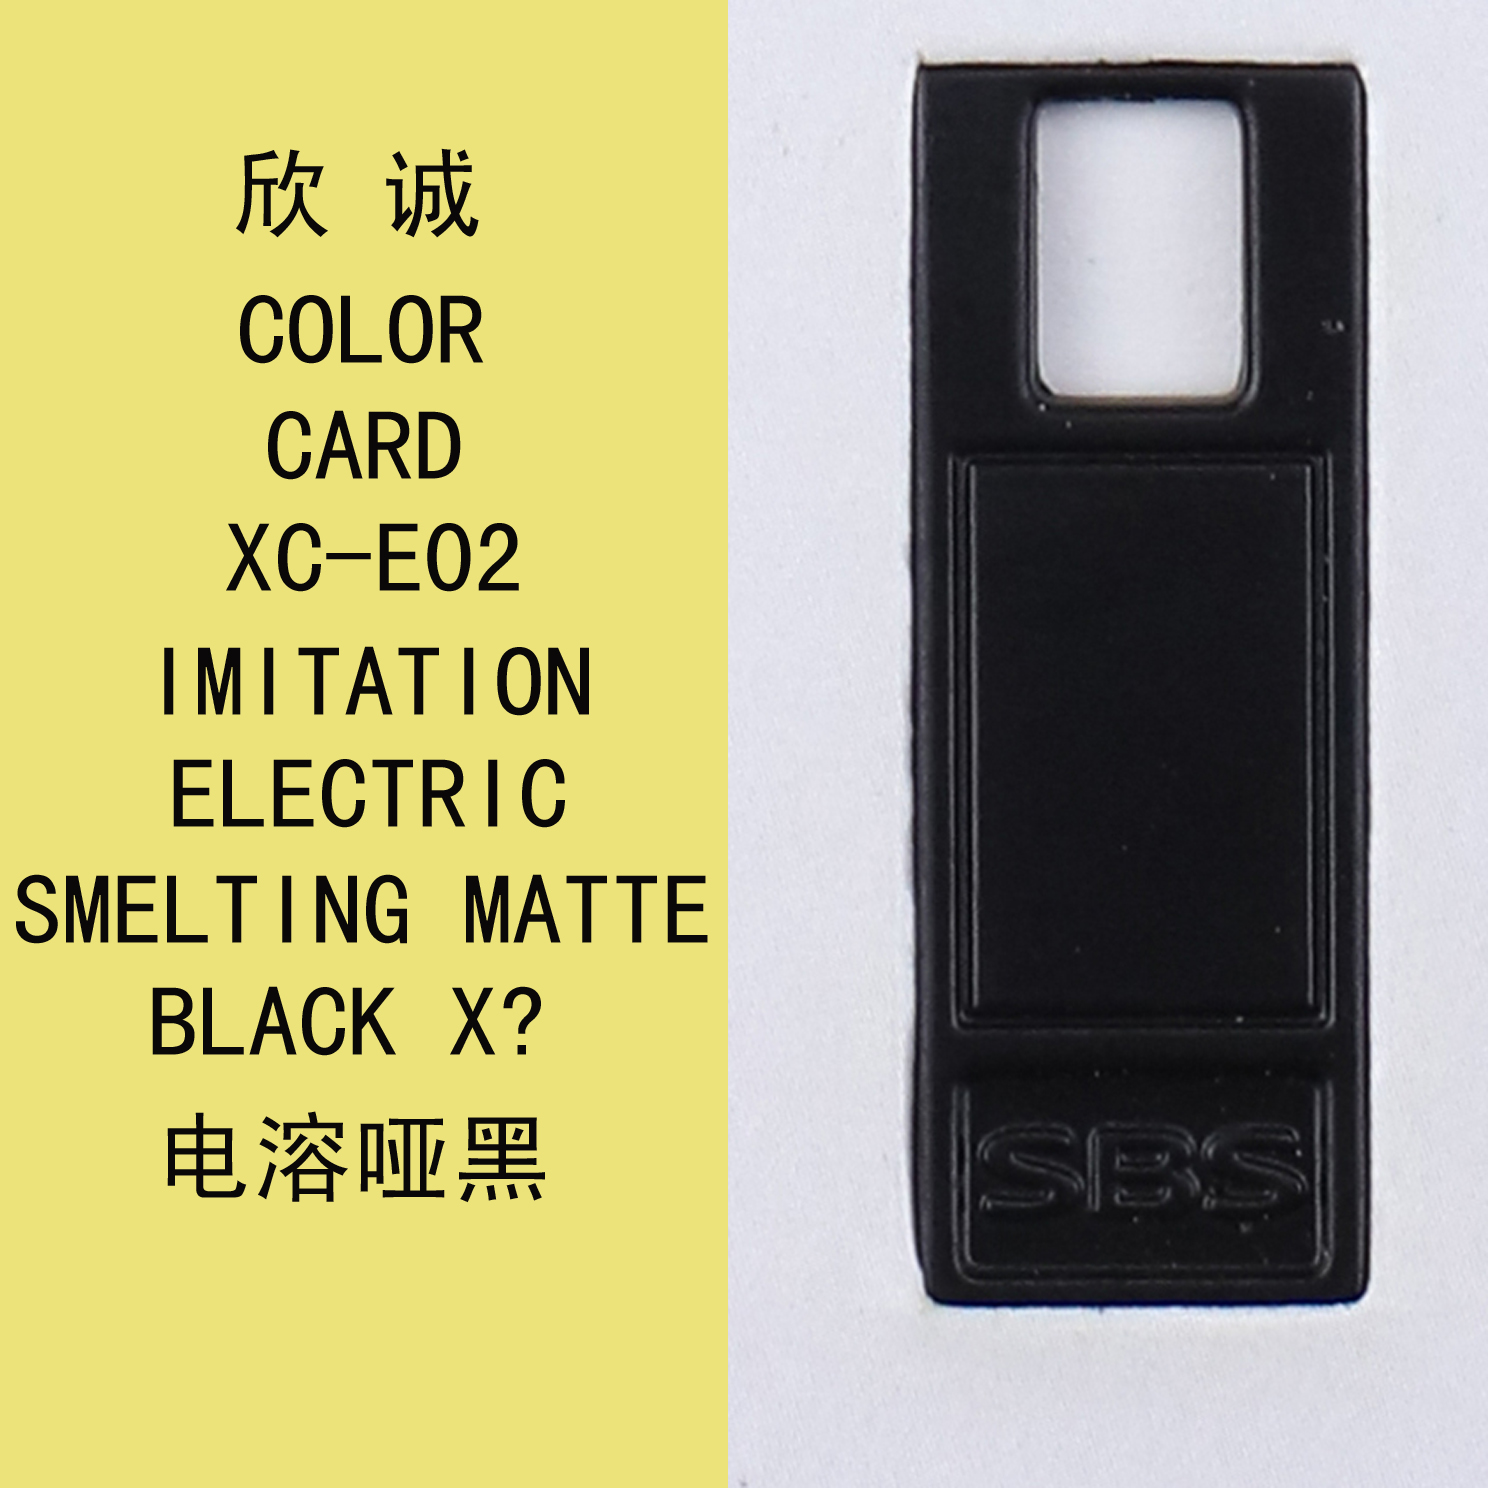 XC-E02電溶啞黑 